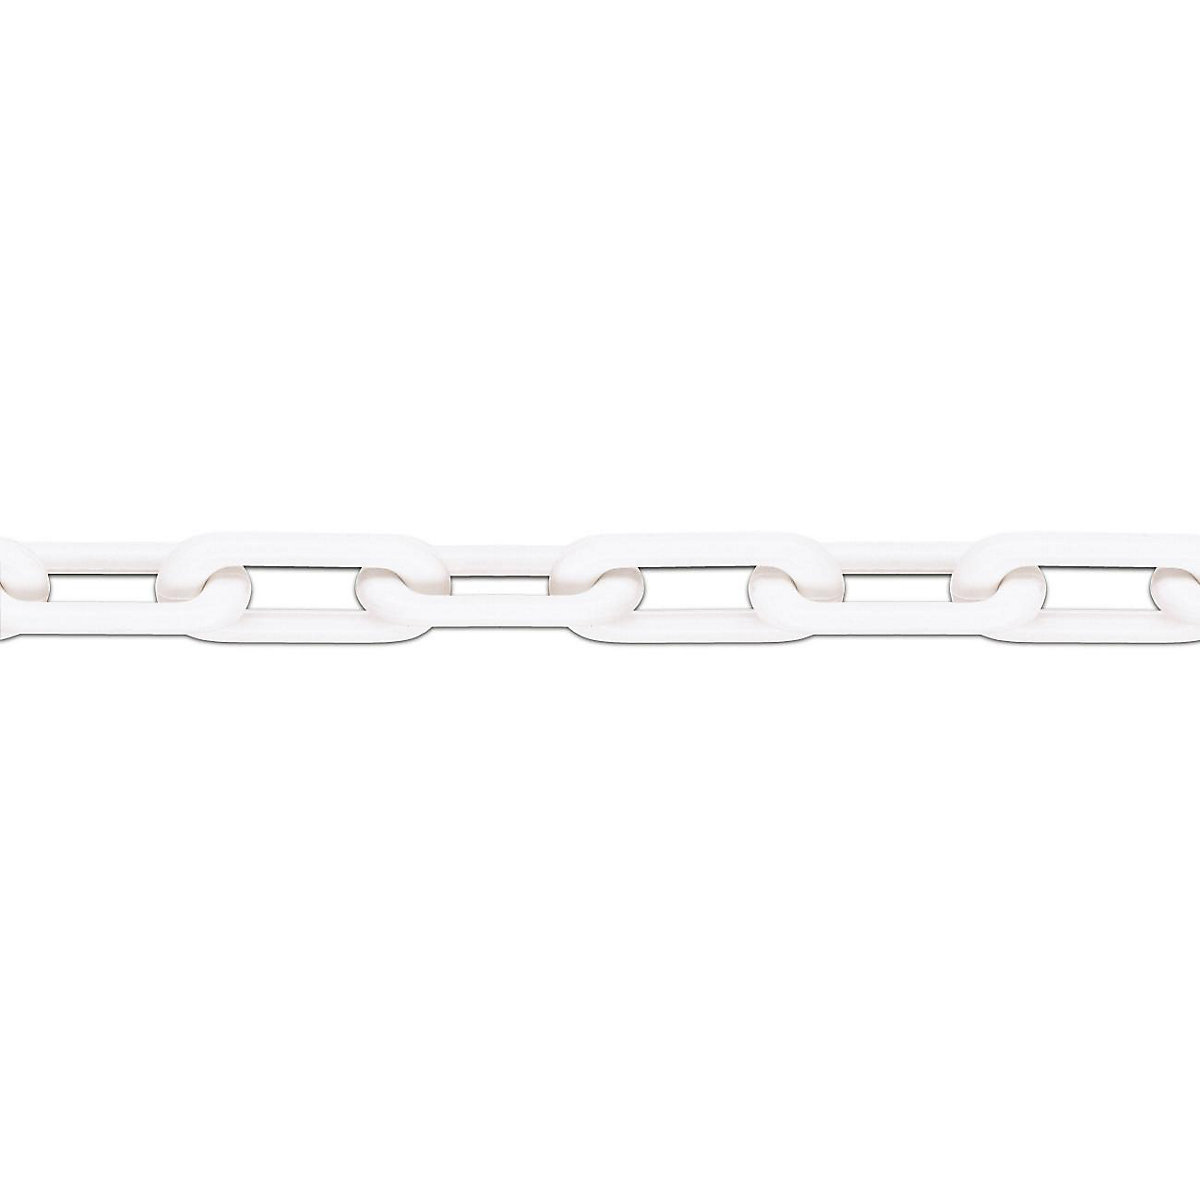 Corrente de qualidade em nylon, qualidade MNK 8, comprimento do colar 25 m, branco, a partir de 4 unid.-2